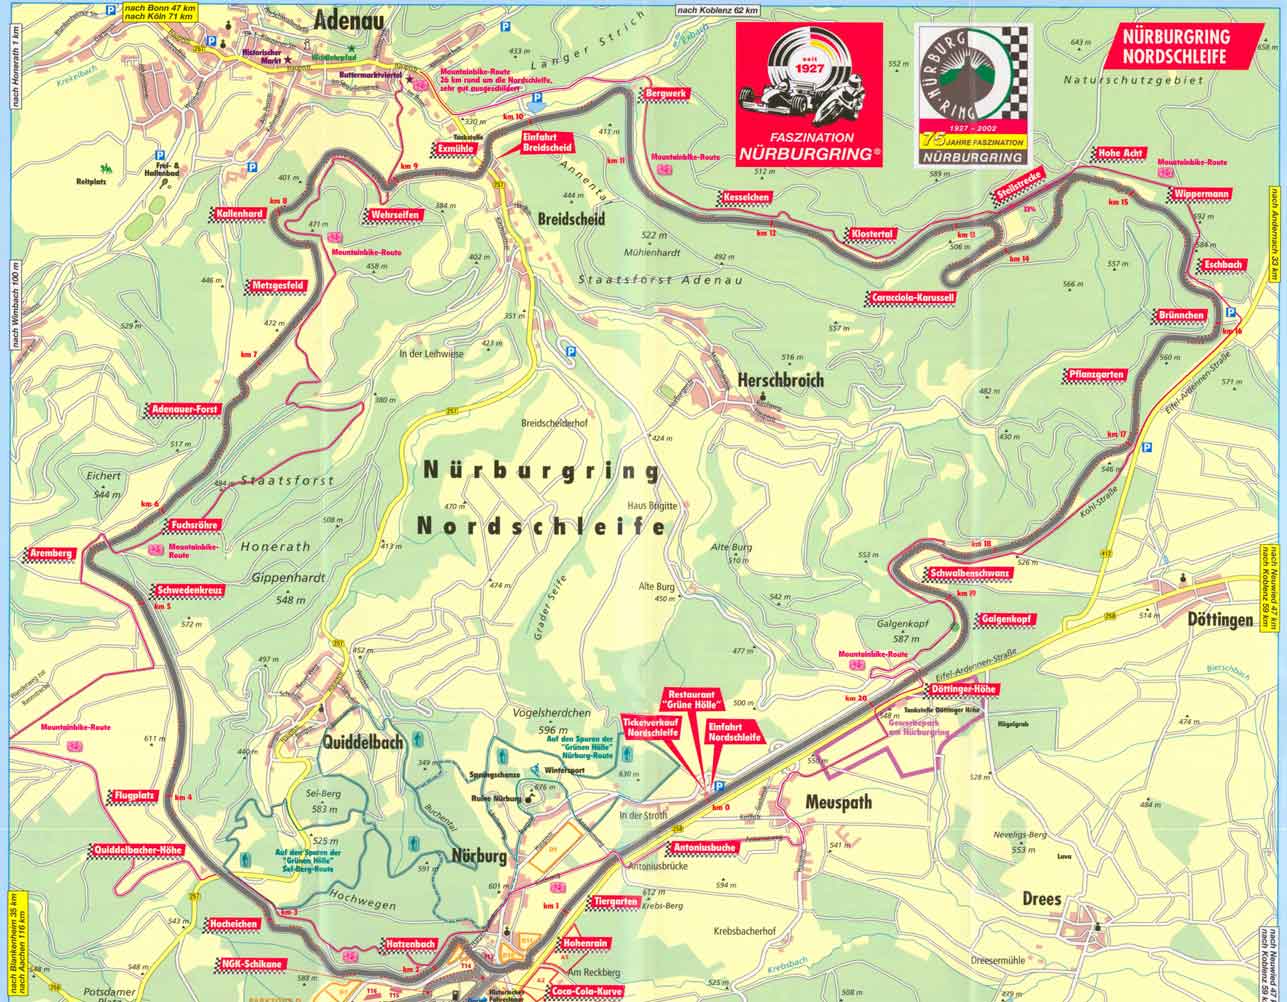 nurburgring_map_color.jpg